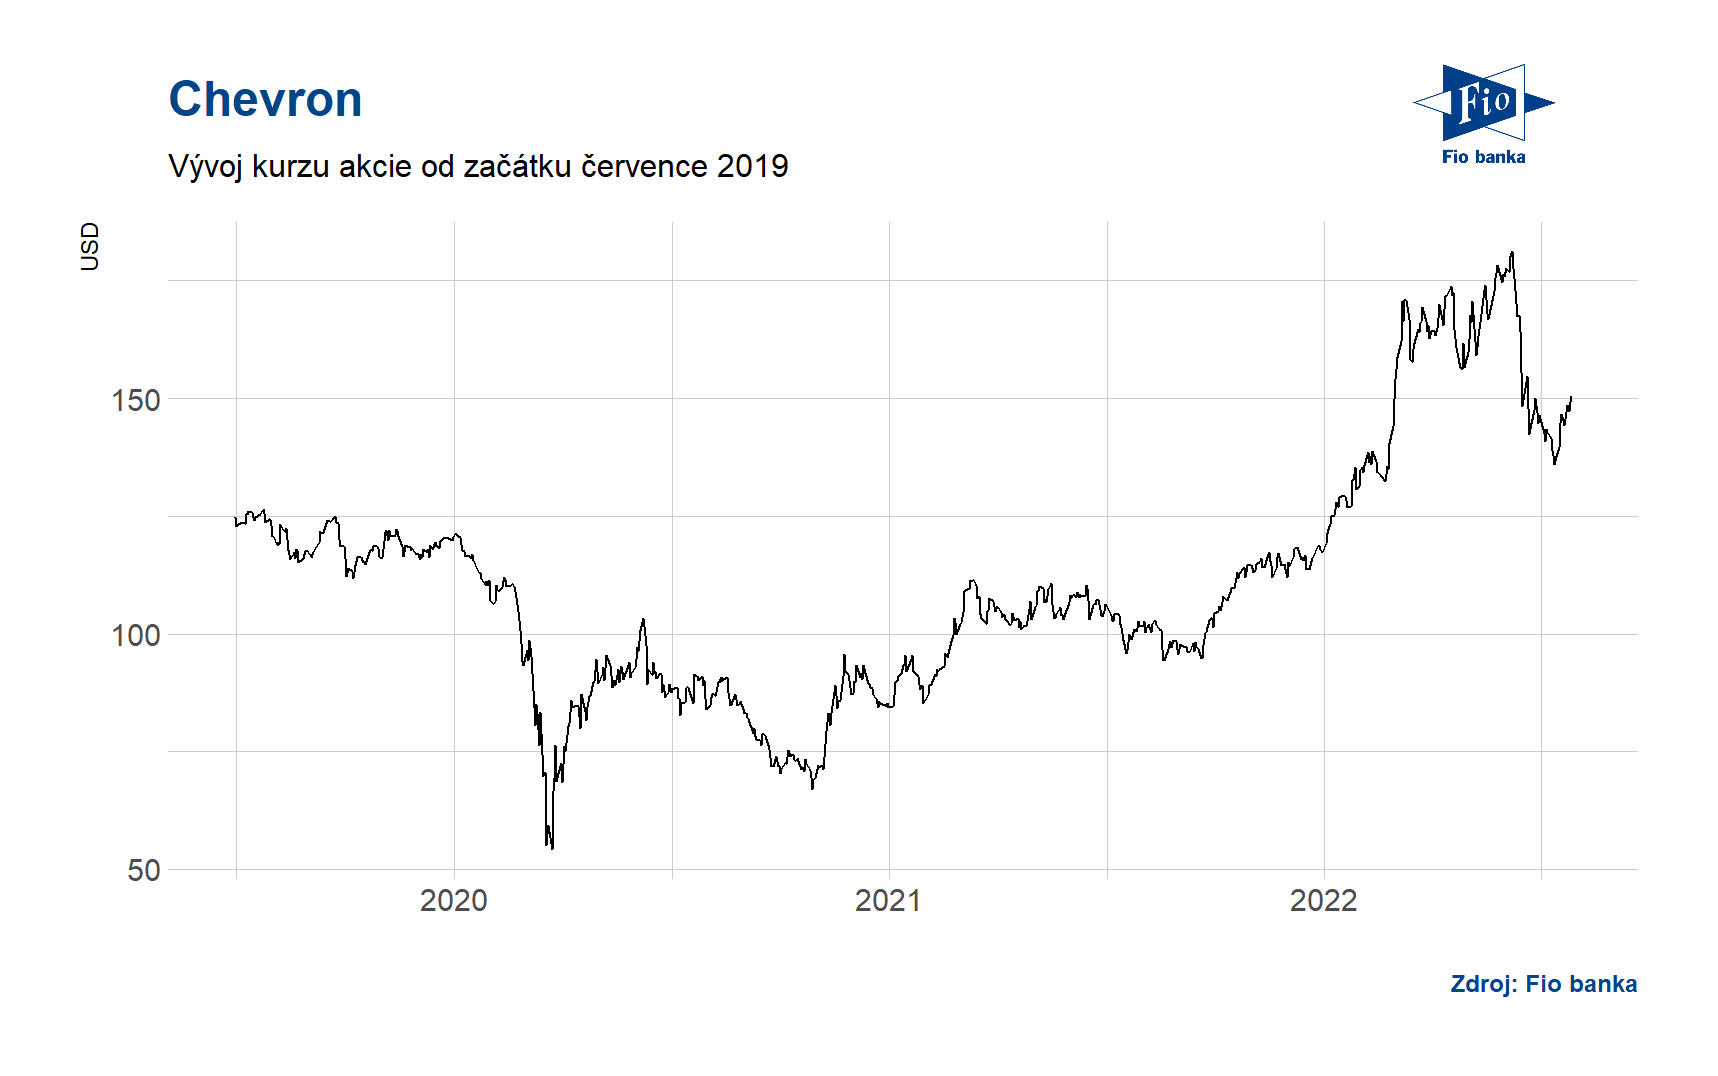 Vývoj ceny akcie společnosti Chevron